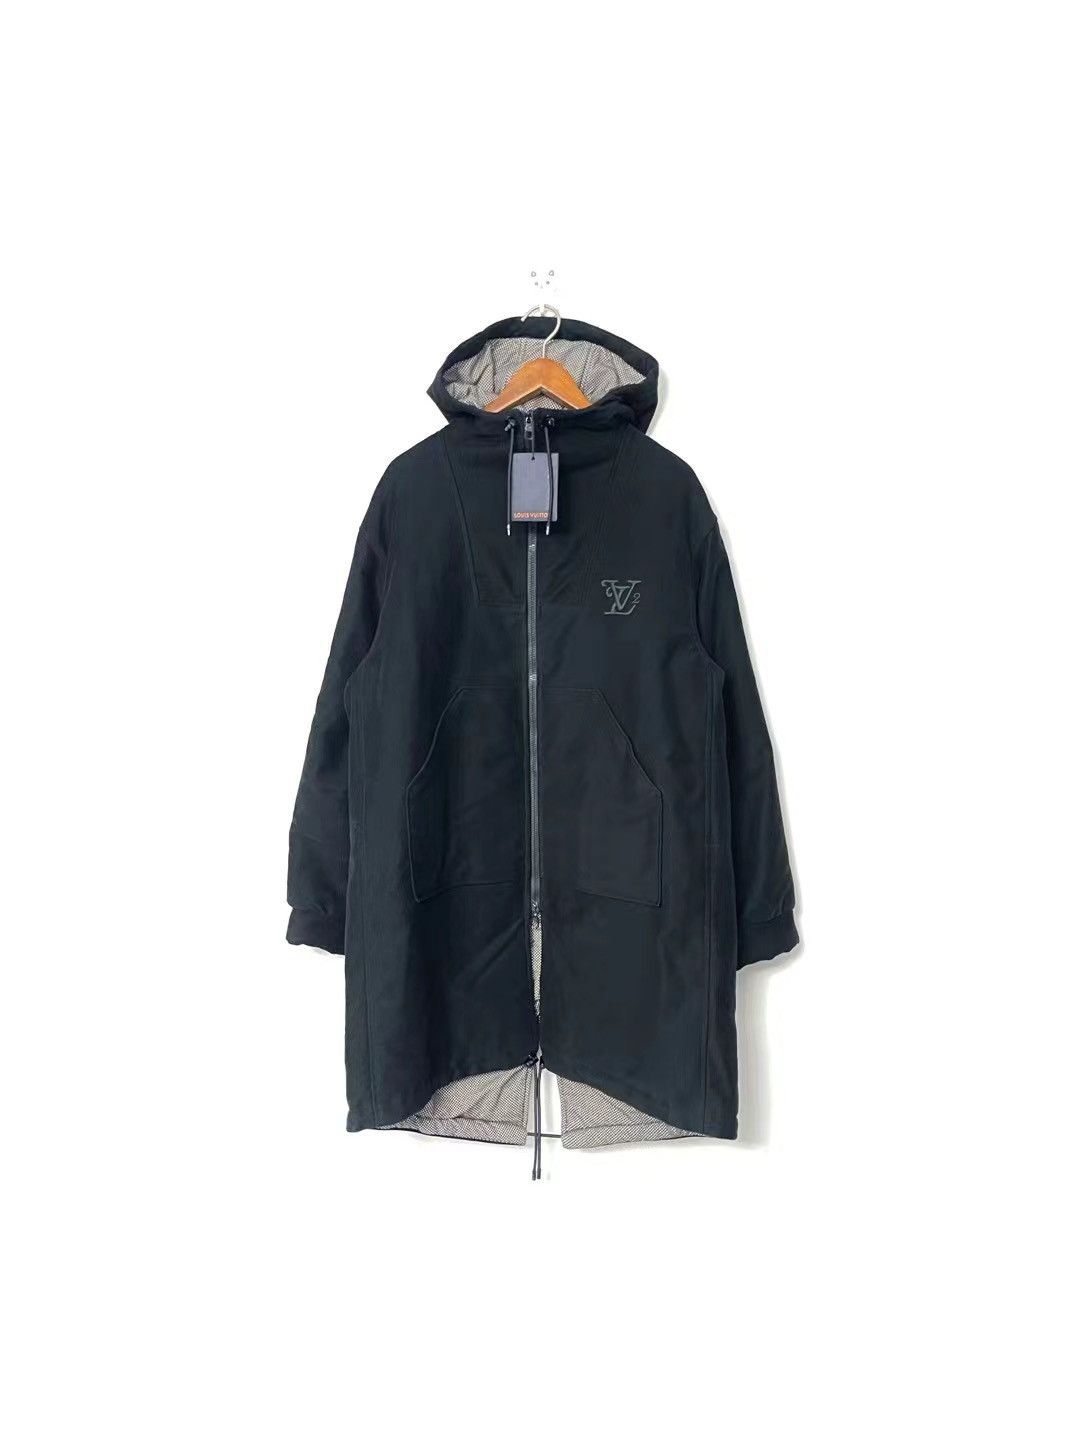 Louis Vuitton Cloud leather bomber jacket, c99